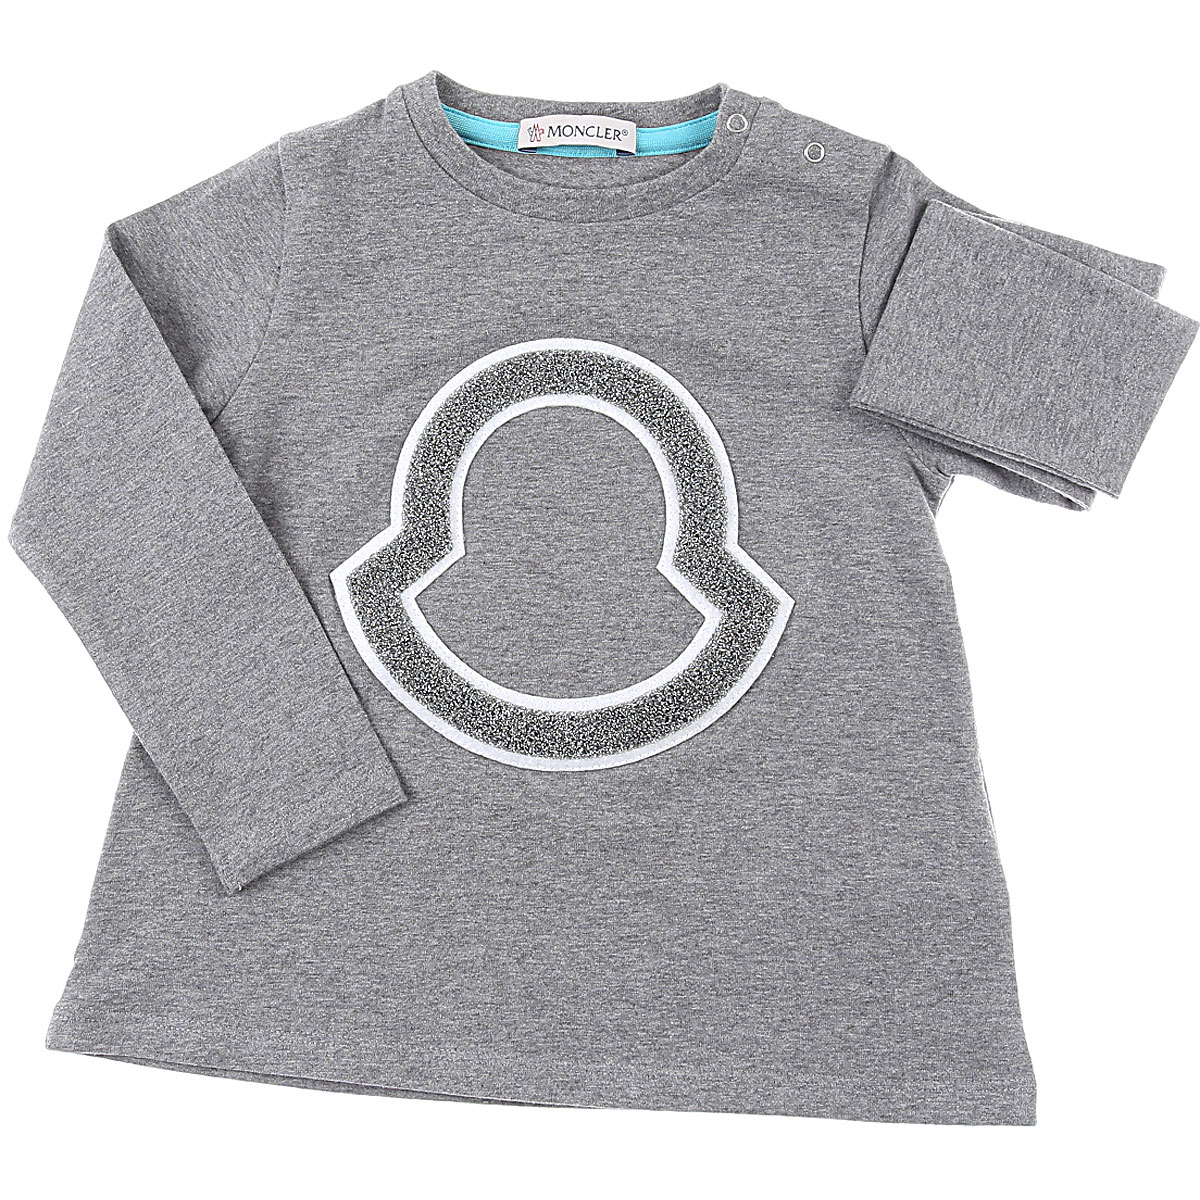 Moncler Baby T-Shirt für Mädchen Günstig im Sale, Grau, Baumwolle, 2017, 12M 18M 24M 2Y 3Y 9M